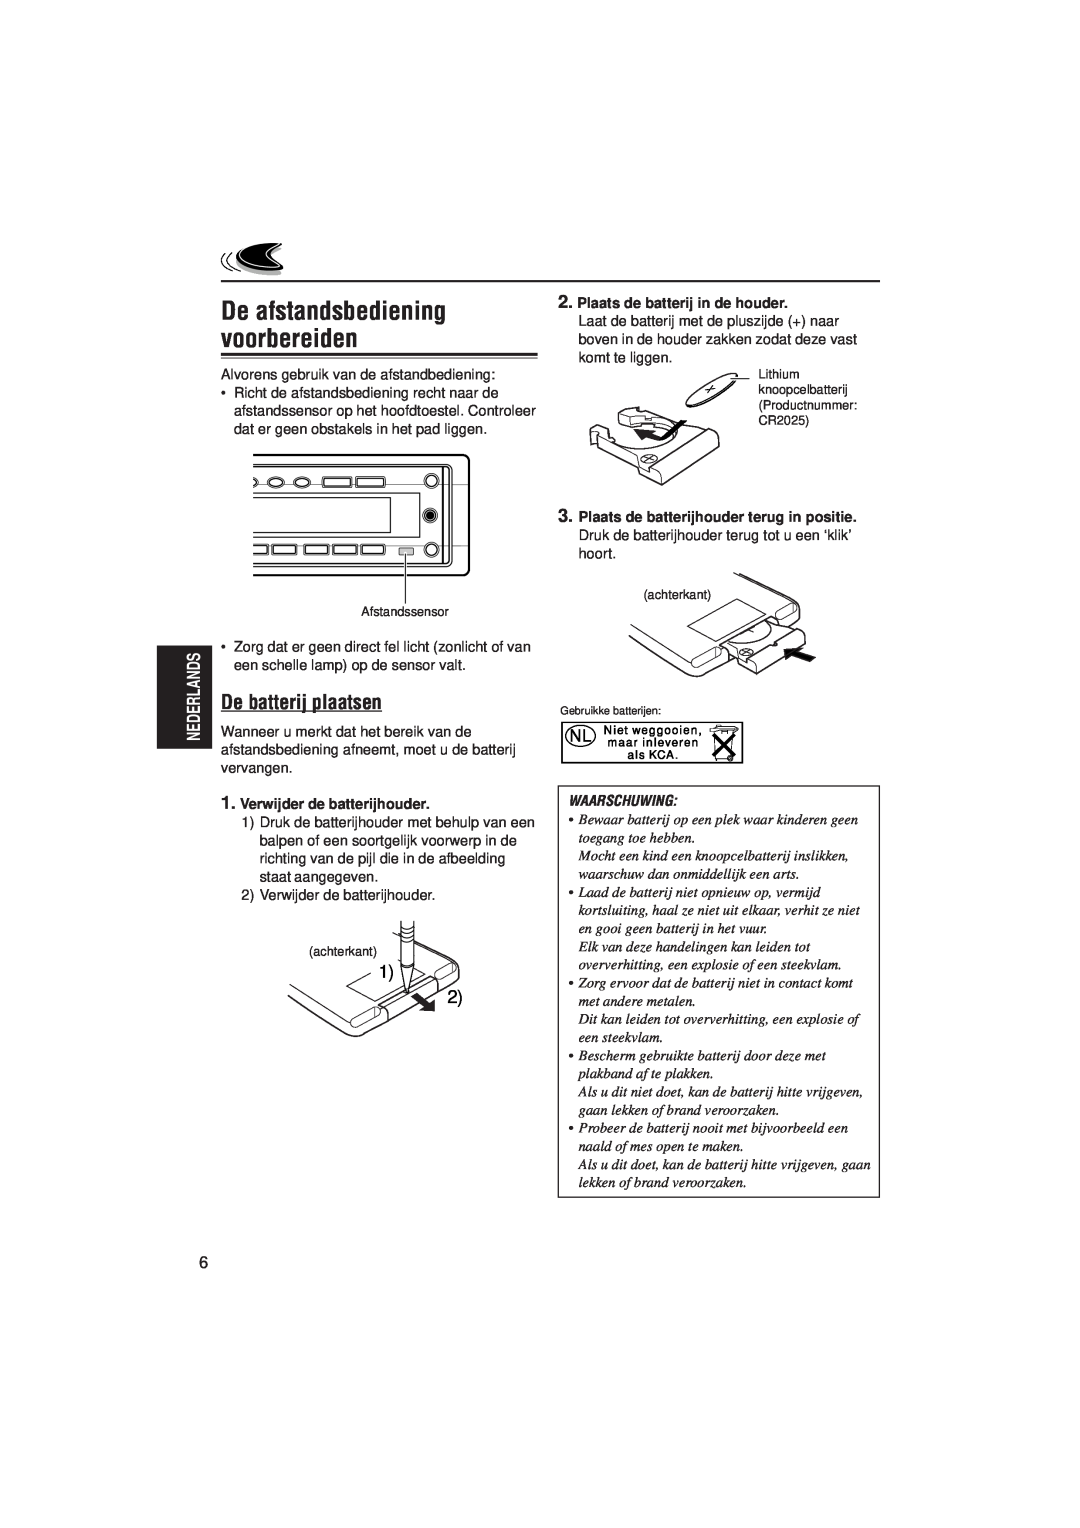 JVC KD-SH99R manual De afstandsbediening voorbereiden, De batterij plaatsen, Verwijder de batterijhouder, Waarschuwing 